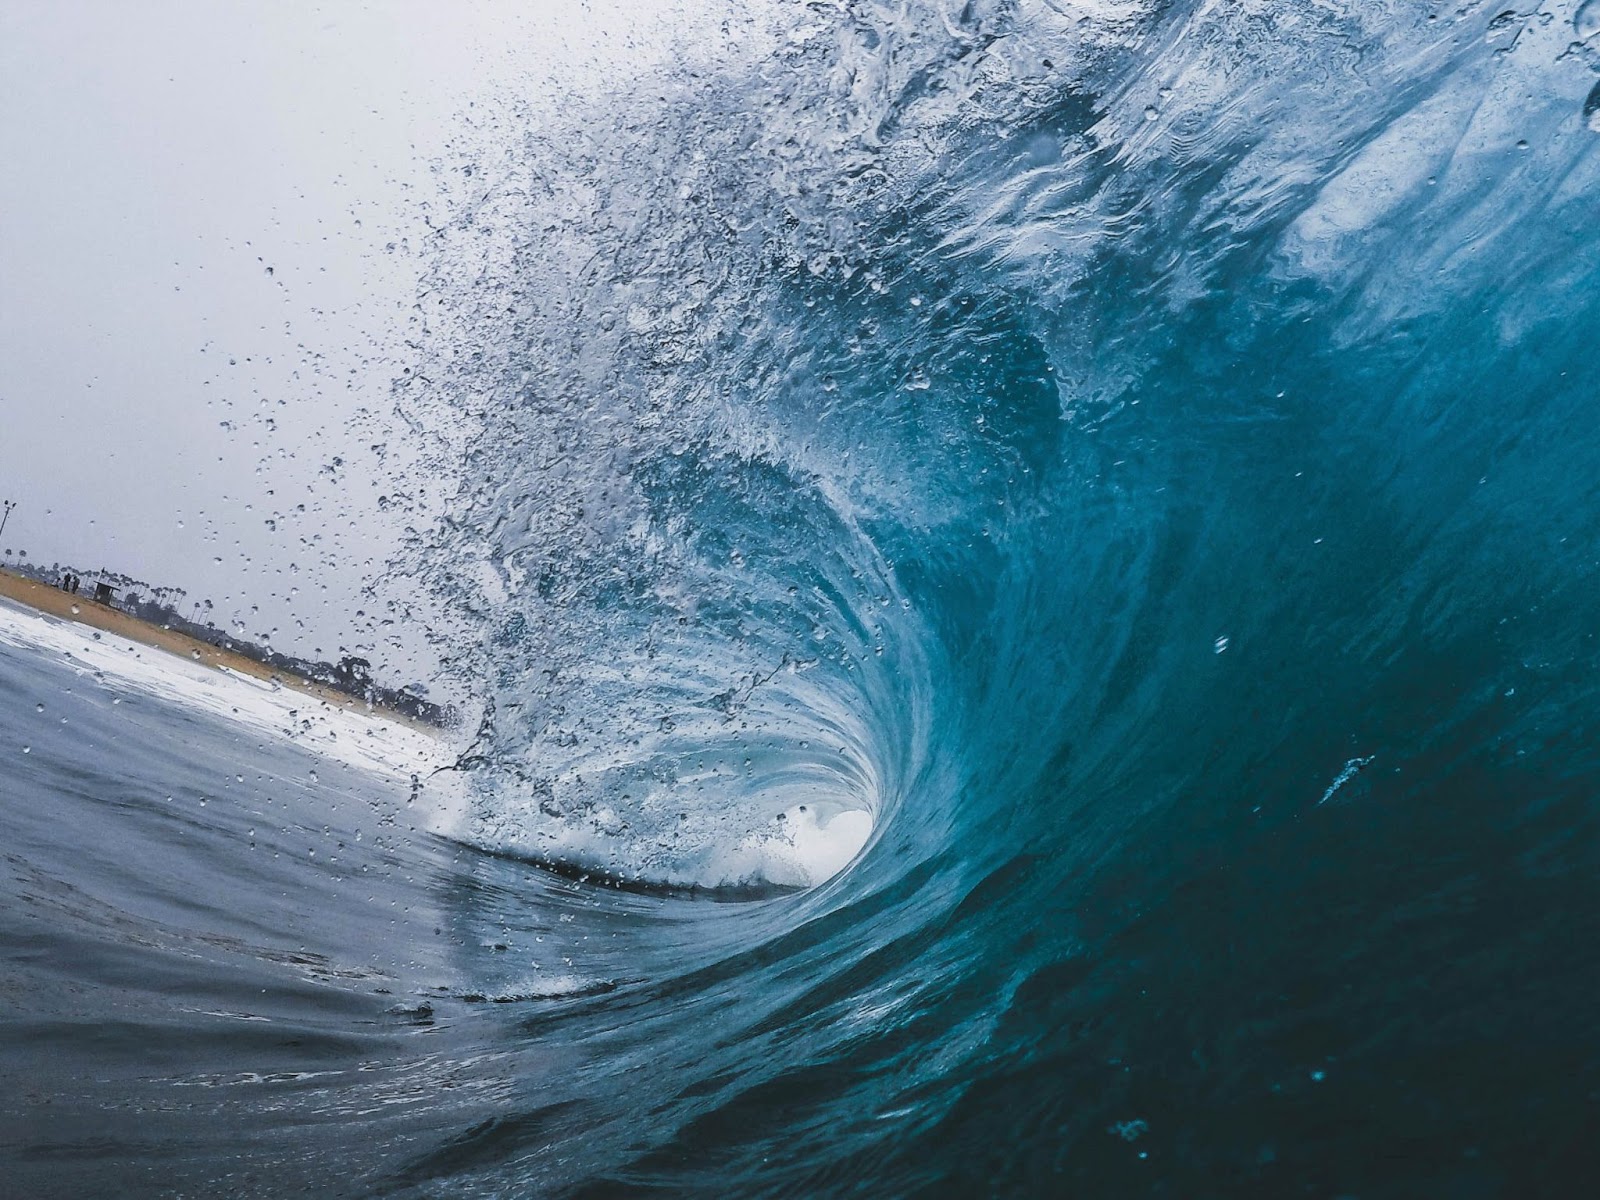 Le rouleau d'une vague bleue cristalline qui s'écrase sur le rivage etdont la crête pulvérise del'eau.